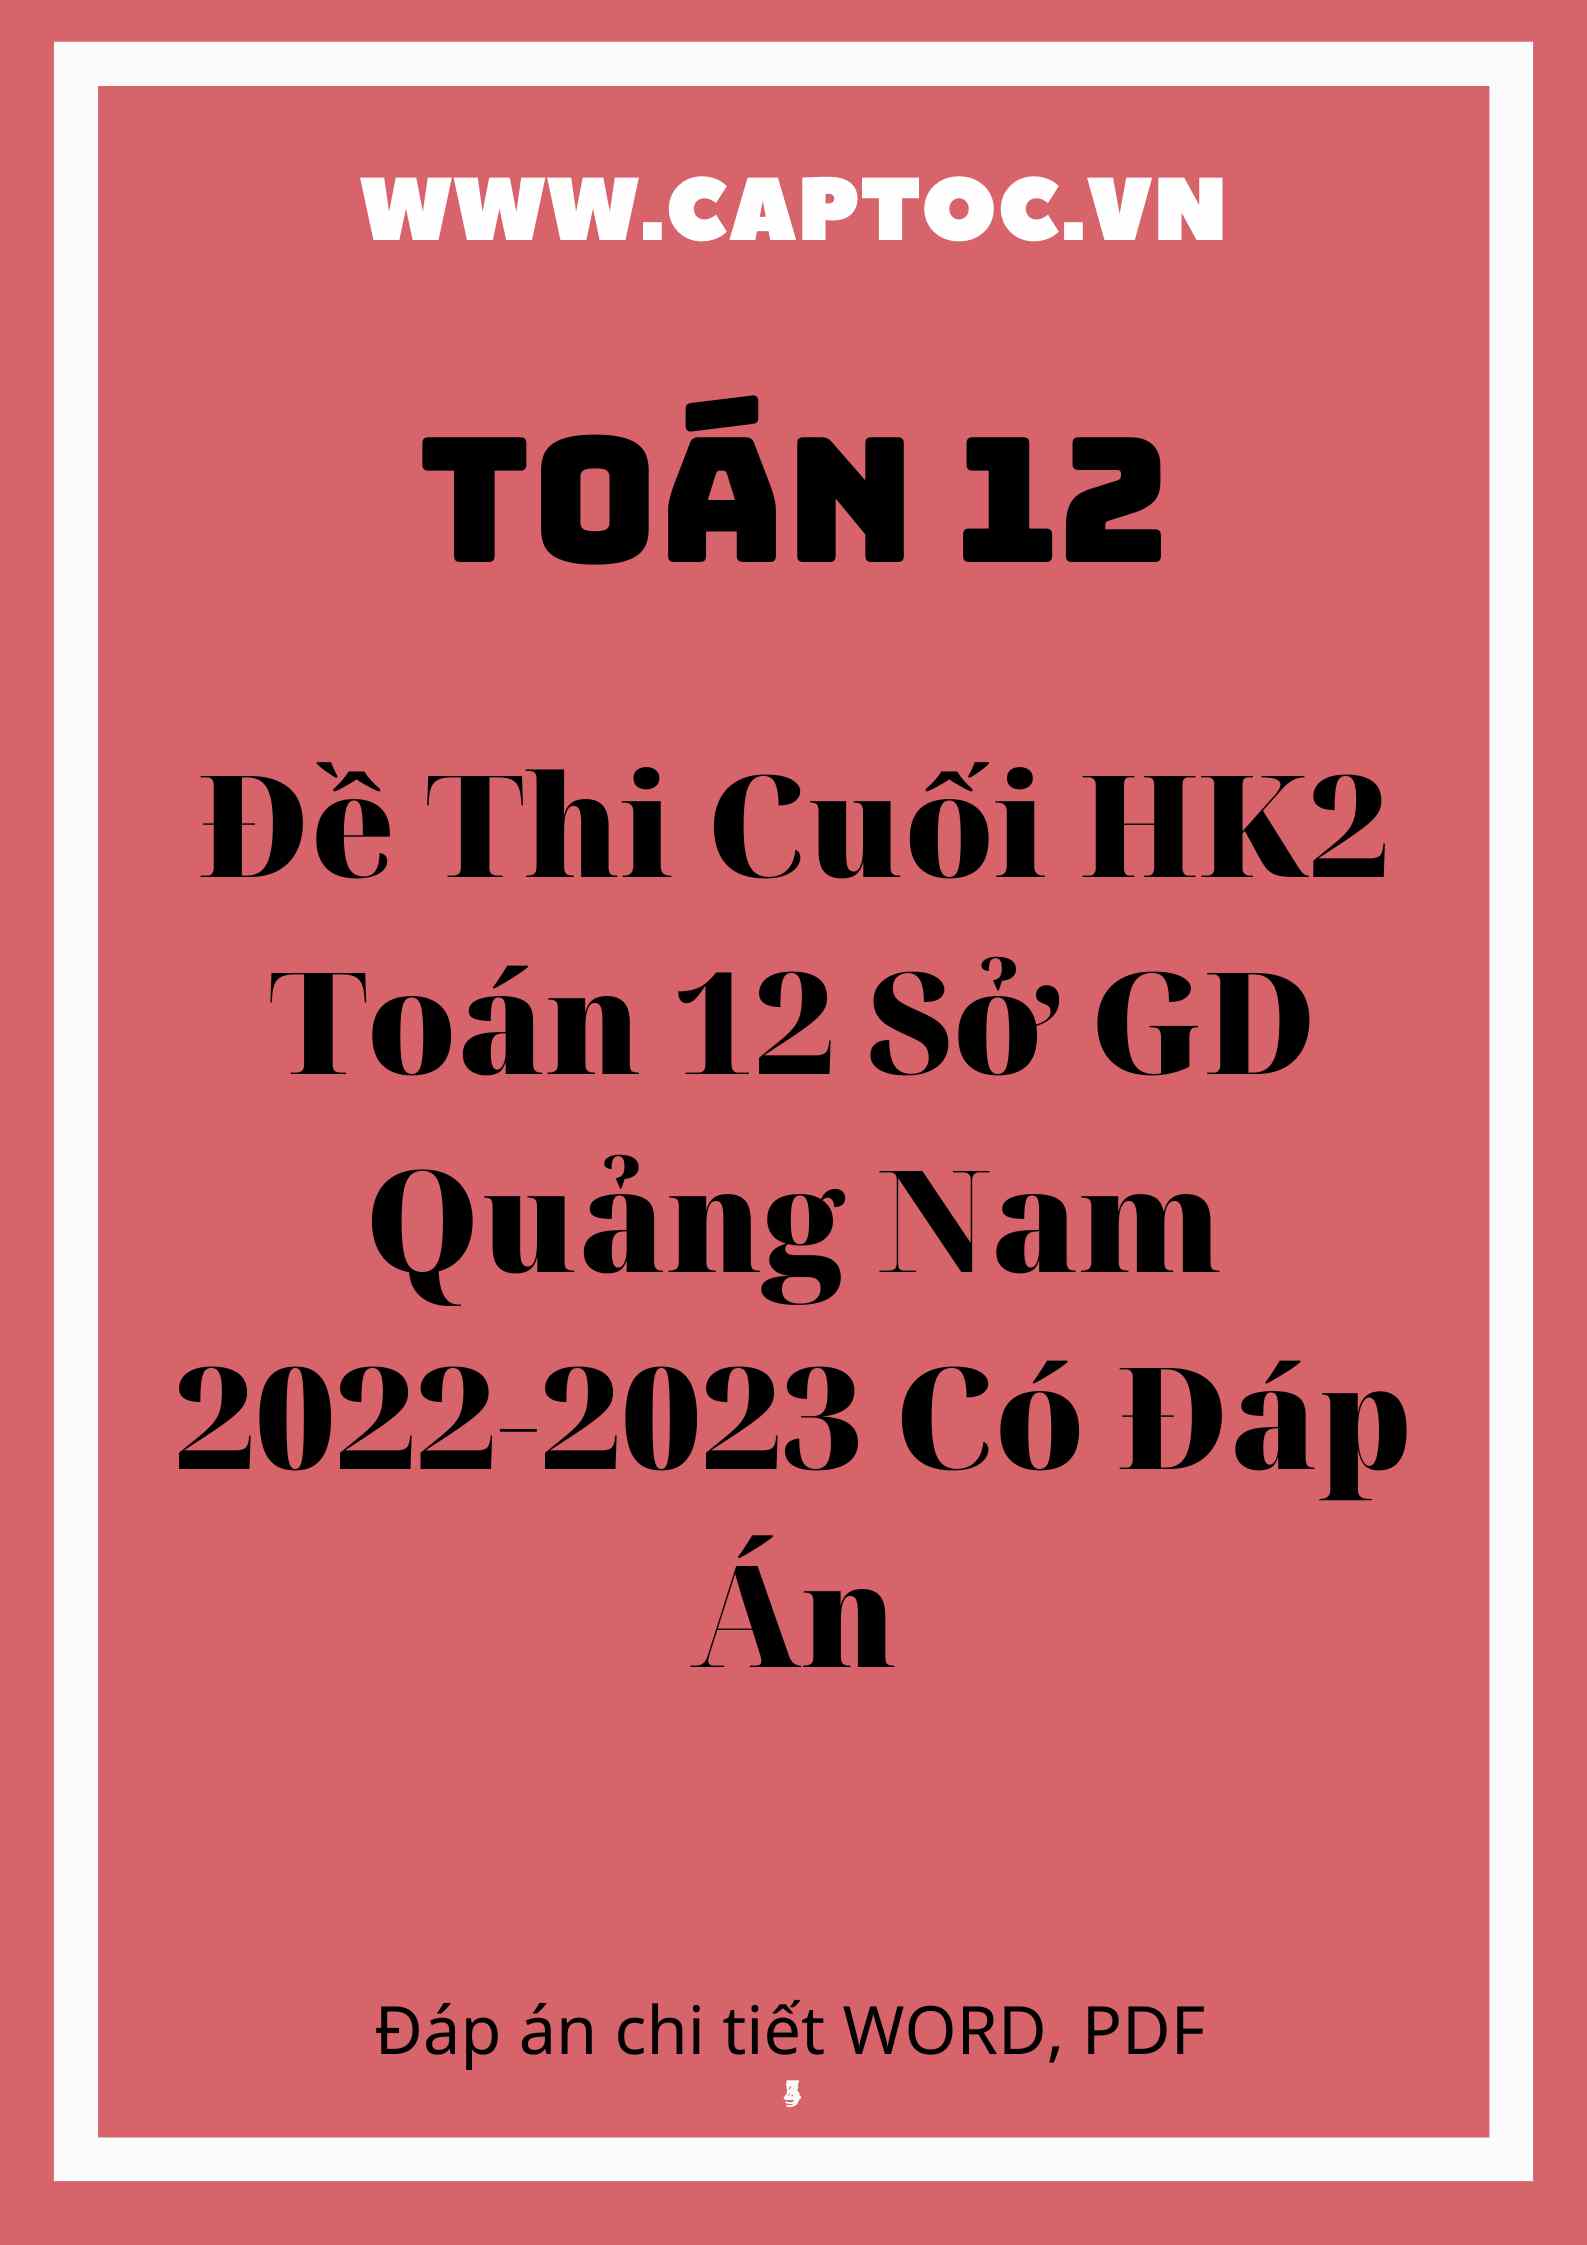 Đề Thi Cuối HK2 Toán 12 Sở GD Quảng Nam 2022-2023 Có Đáp Án